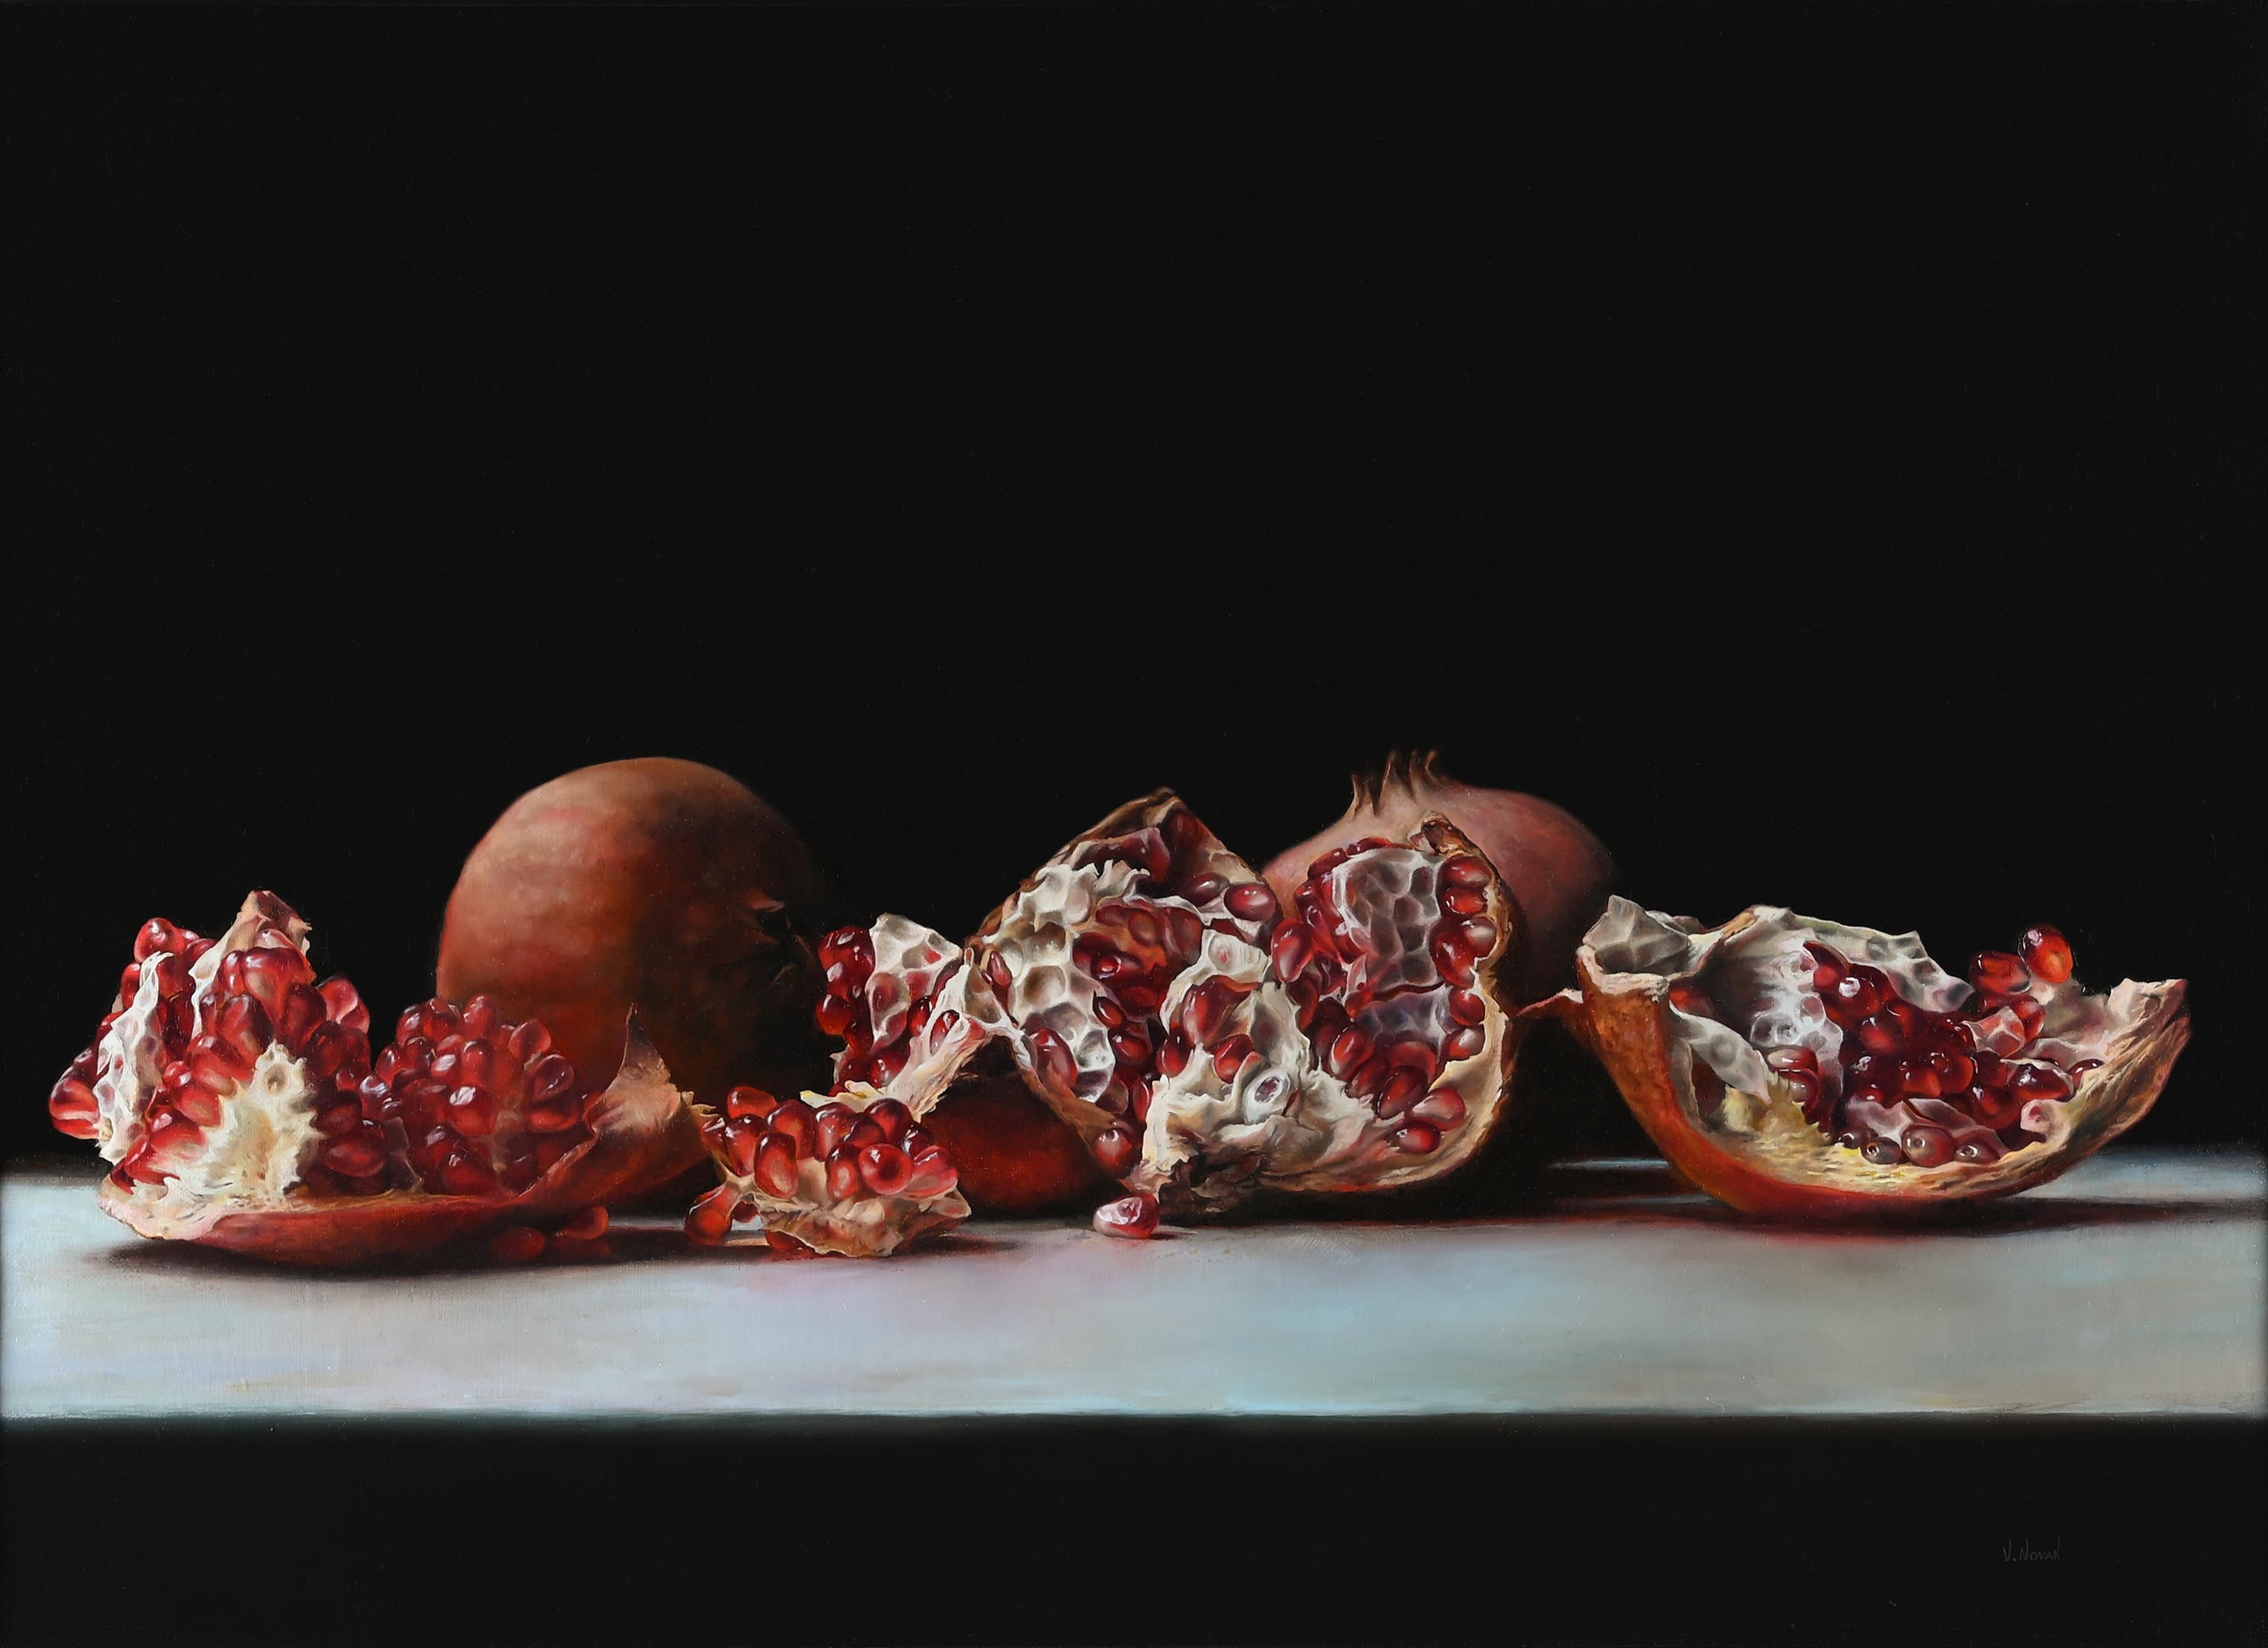 "Broken Hearts" Original Painting, Lush Pomegranate Still Life